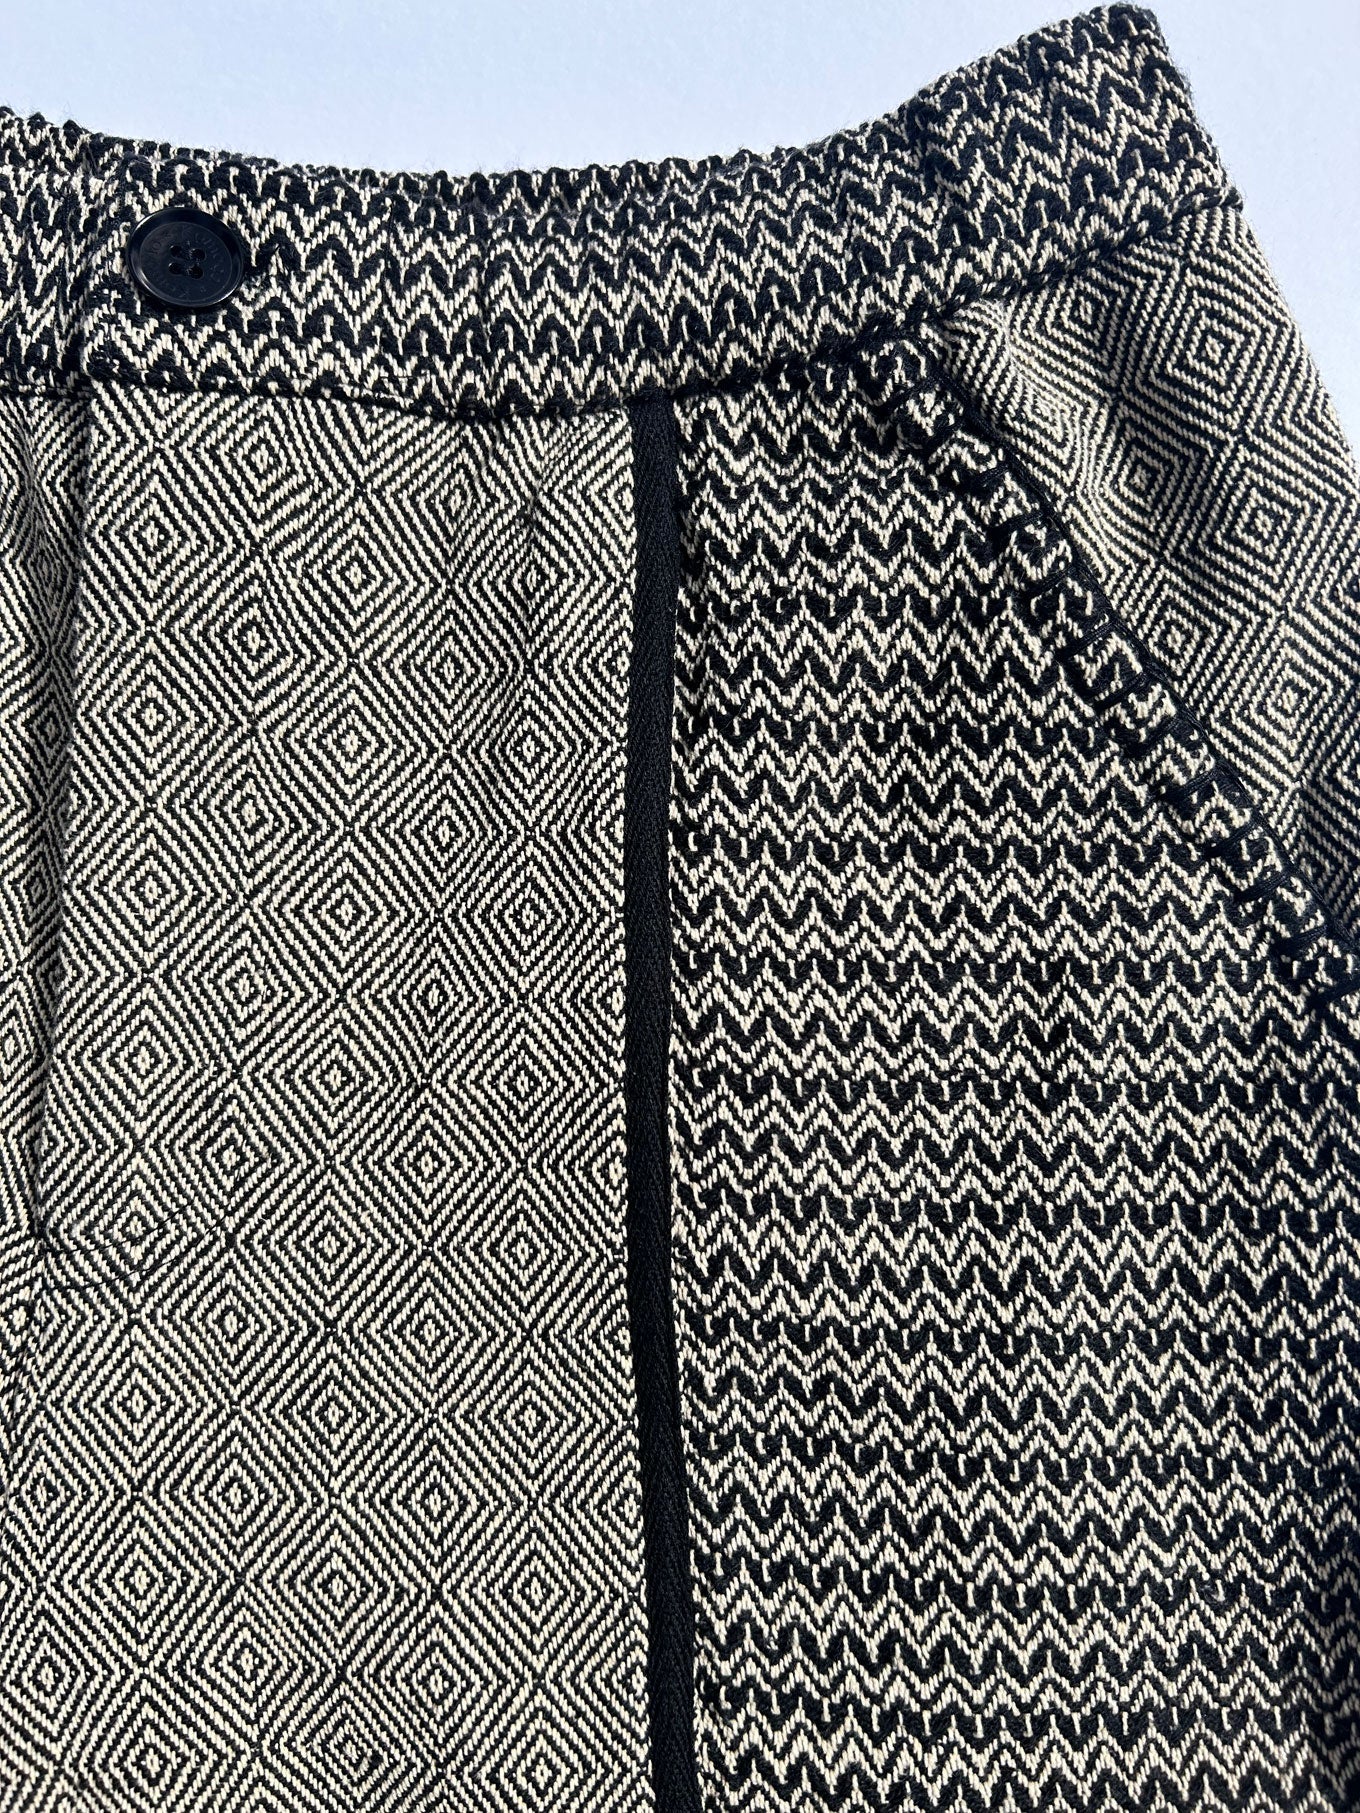 Hellbraune Shorts DOLLY aus 100% Baumwolle von Komodo